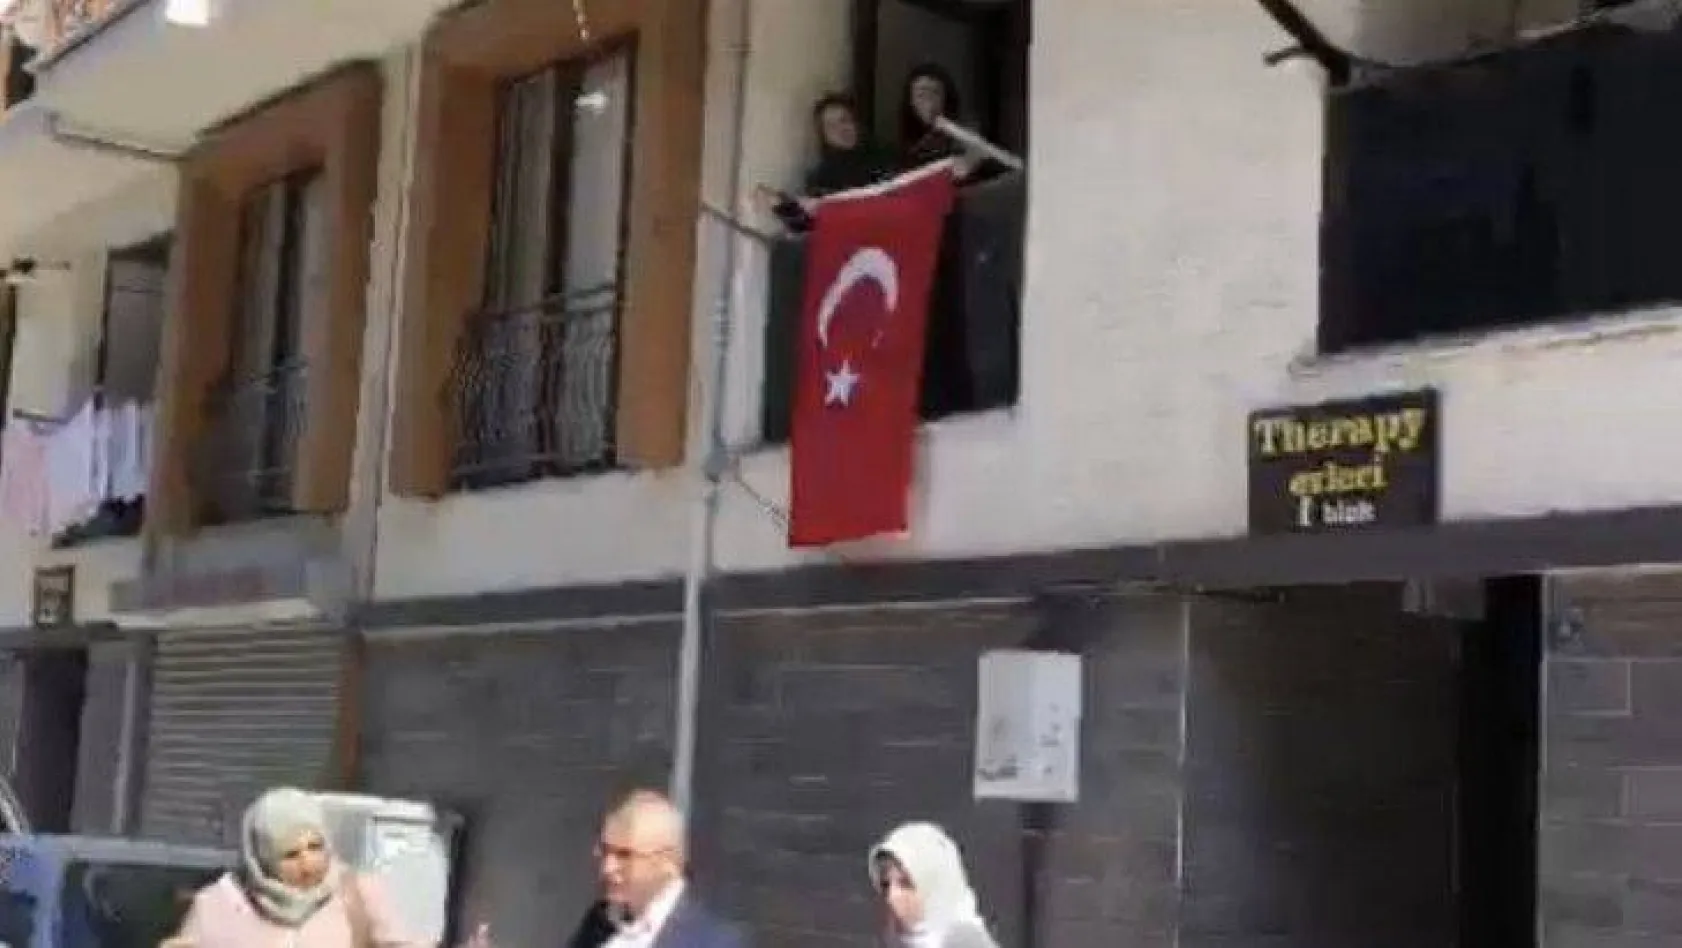 Bursa'daki patlamada şehit olan ceza infaz memurunun evine Türk bayrağı asıldı